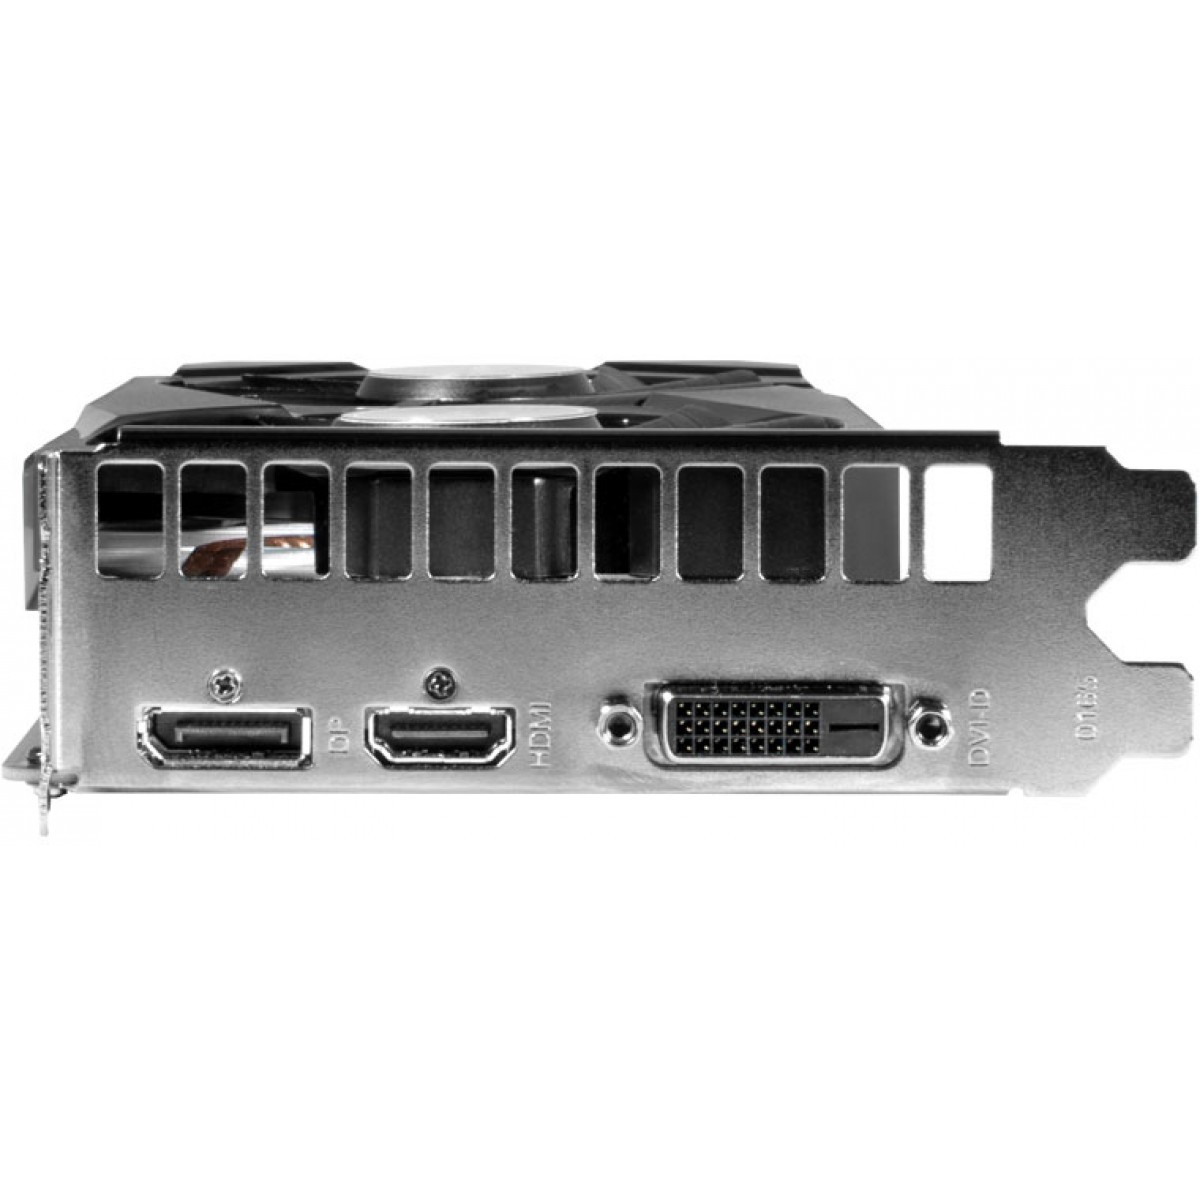 Placa de Vídeo Galax NVIDIA GeForce GTX 1660 1-Click OC, Dual, 6GB, GDDR5, 192Bit, 60SRH7DSY91C